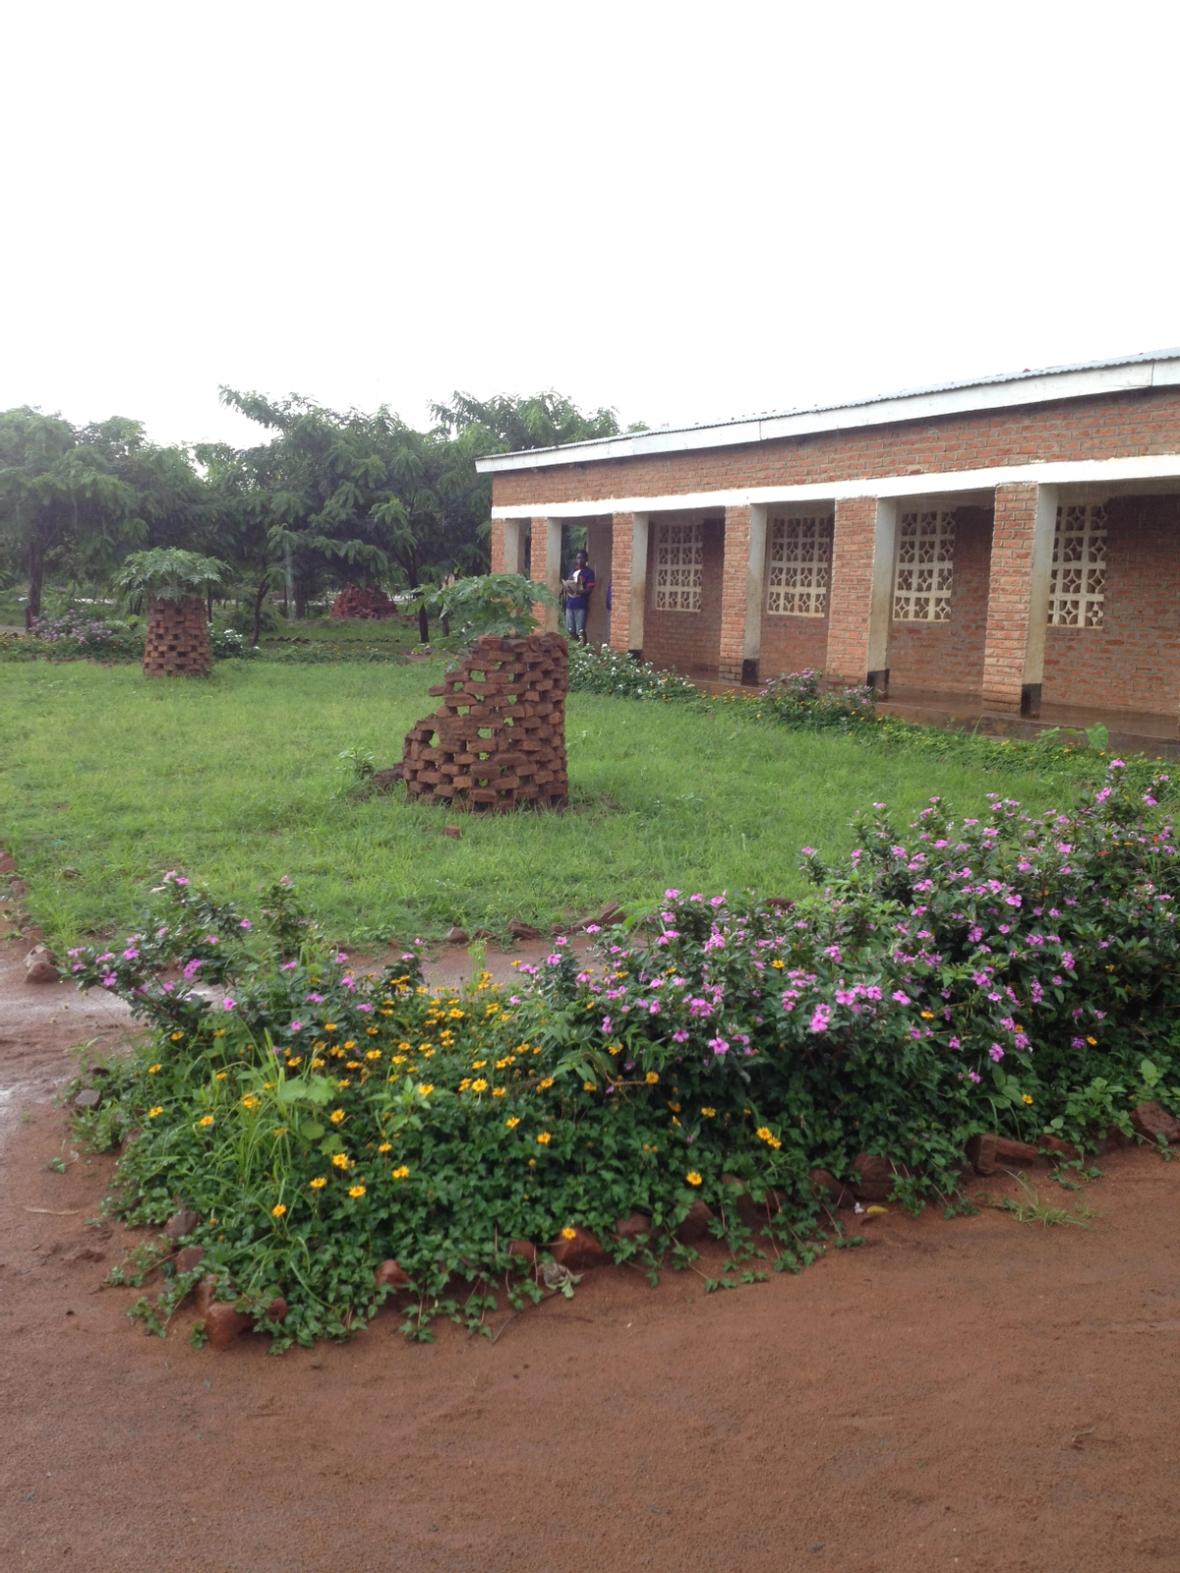 Masiye School completed